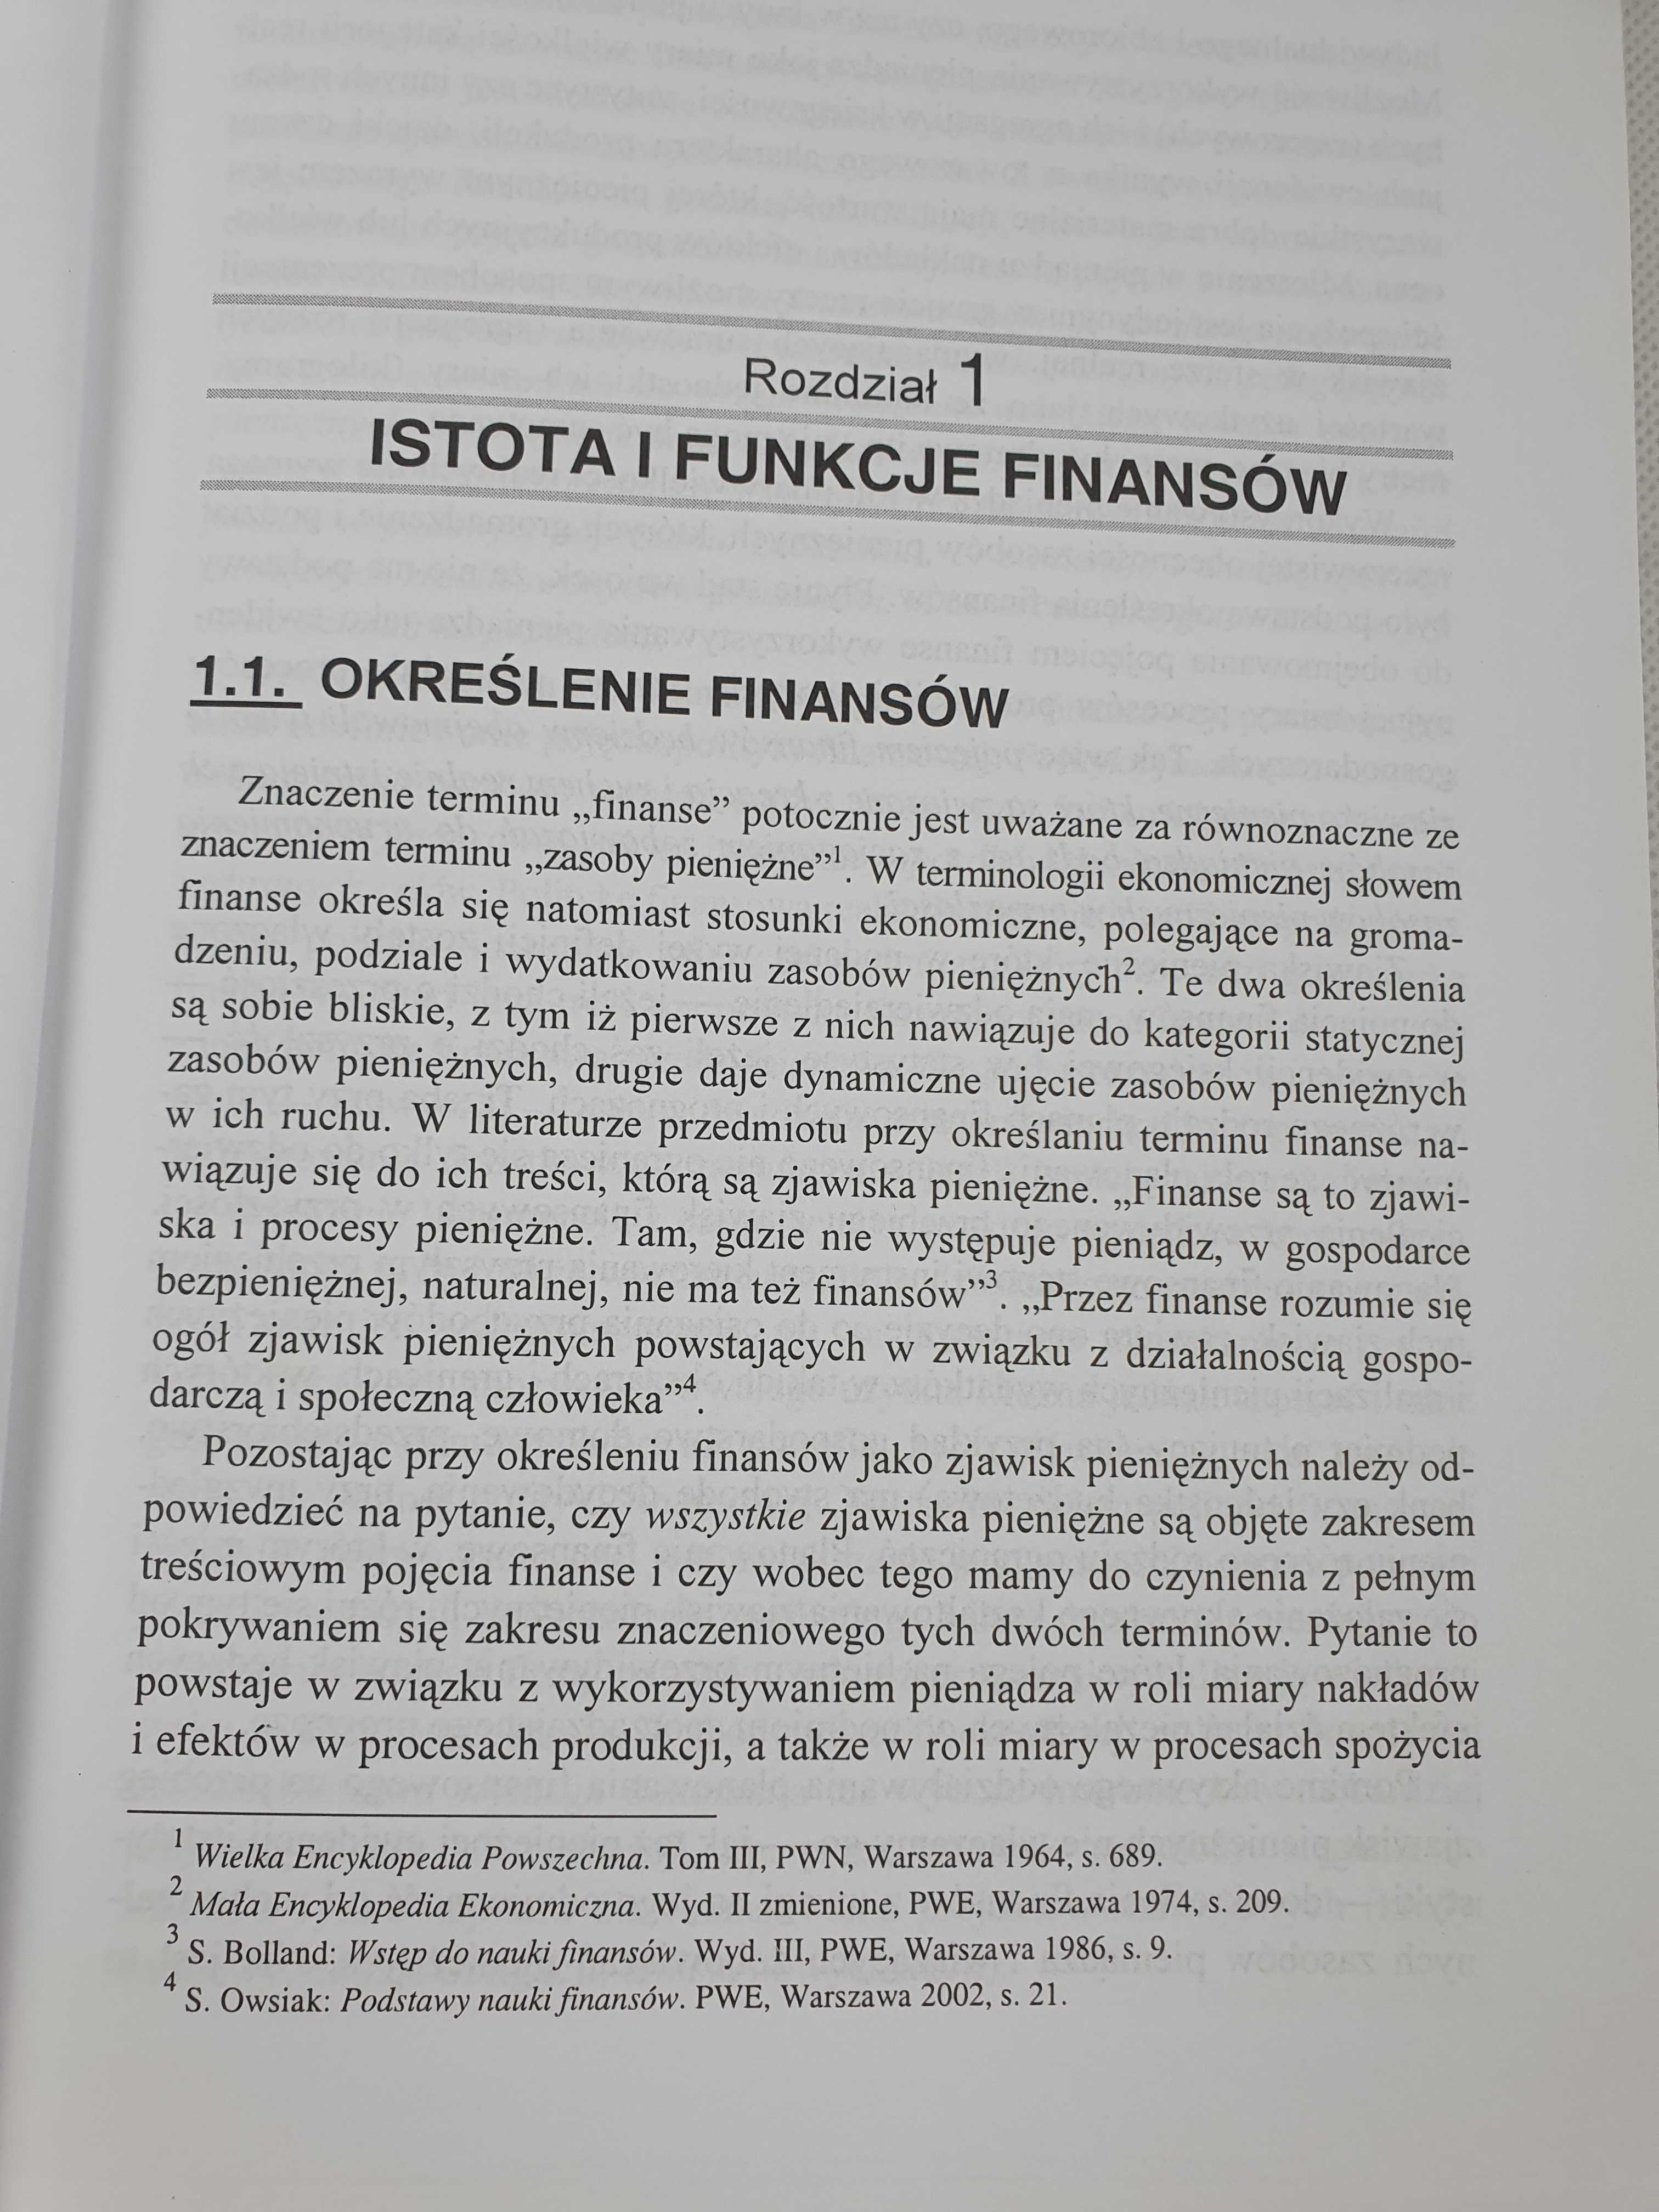 Podręcznik Finanse, praca zbiorowa pod redakcją Janusza Ostaszewskiego